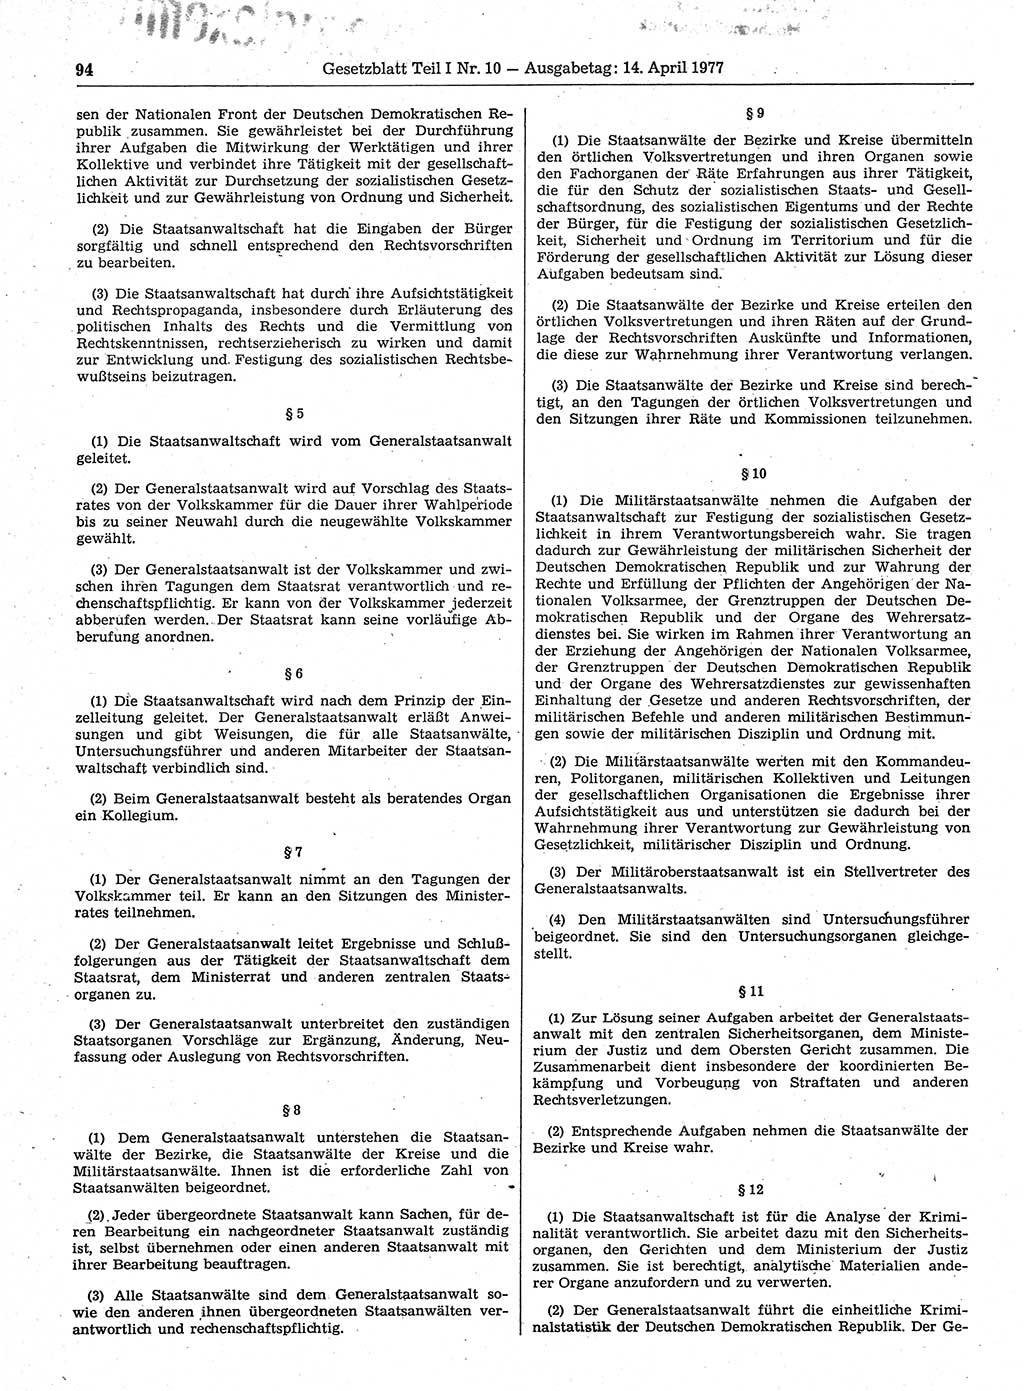 Gesetzblatt (GBl.) der Deutschen Demokratischen Republik (DDR) Teil Ⅰ 1977, Seite 94 (GBl. DDR Ⅰ 1977, S. 94)